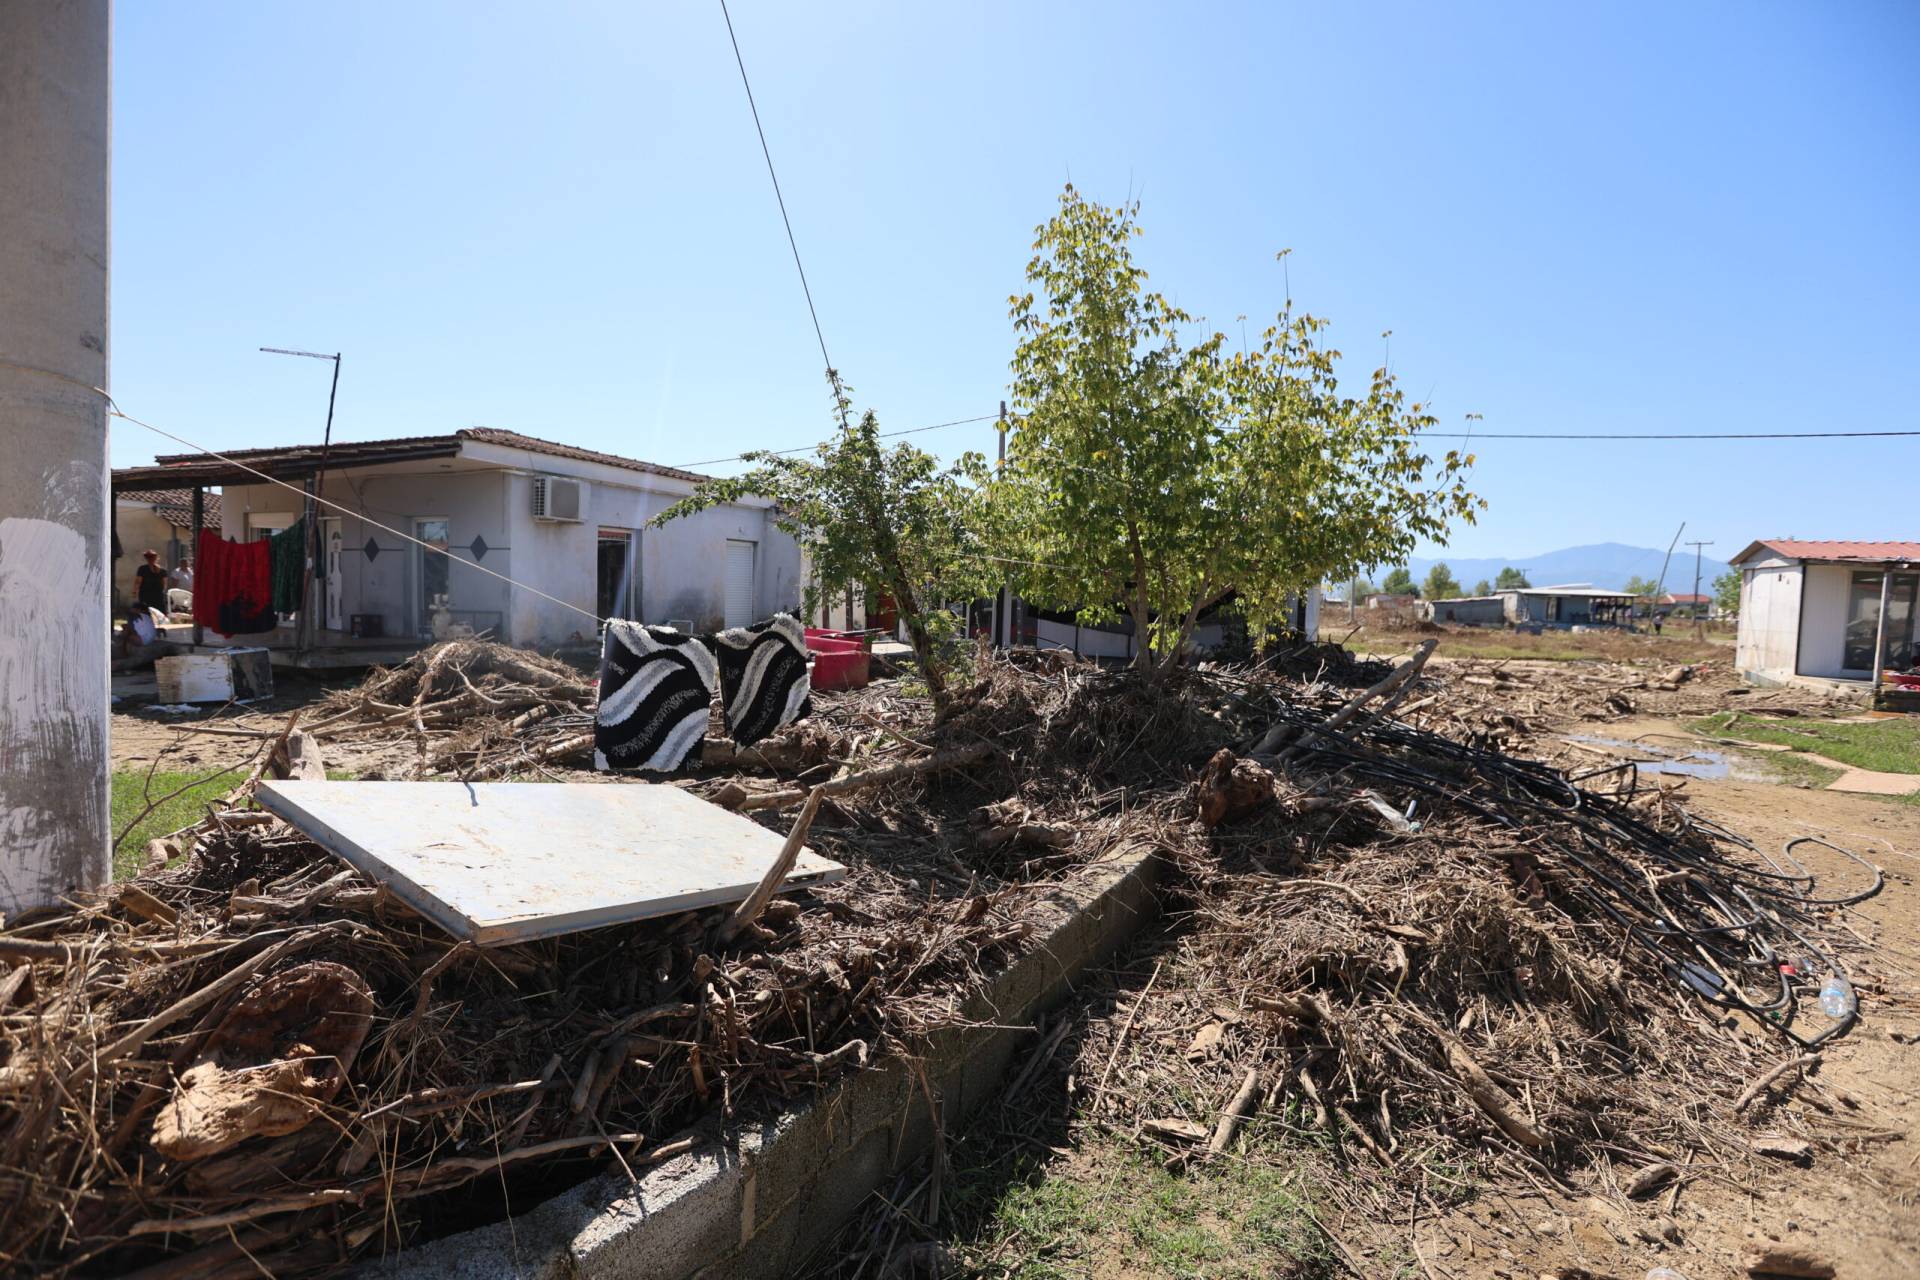 Άρχισε η καταβολή αποζημιώσεων για οικοσκευές  στις πληγείσες περιοχές – Αυτοψίες από κλιμάκια στα χωριά του Θεσσαλικού κάμπου